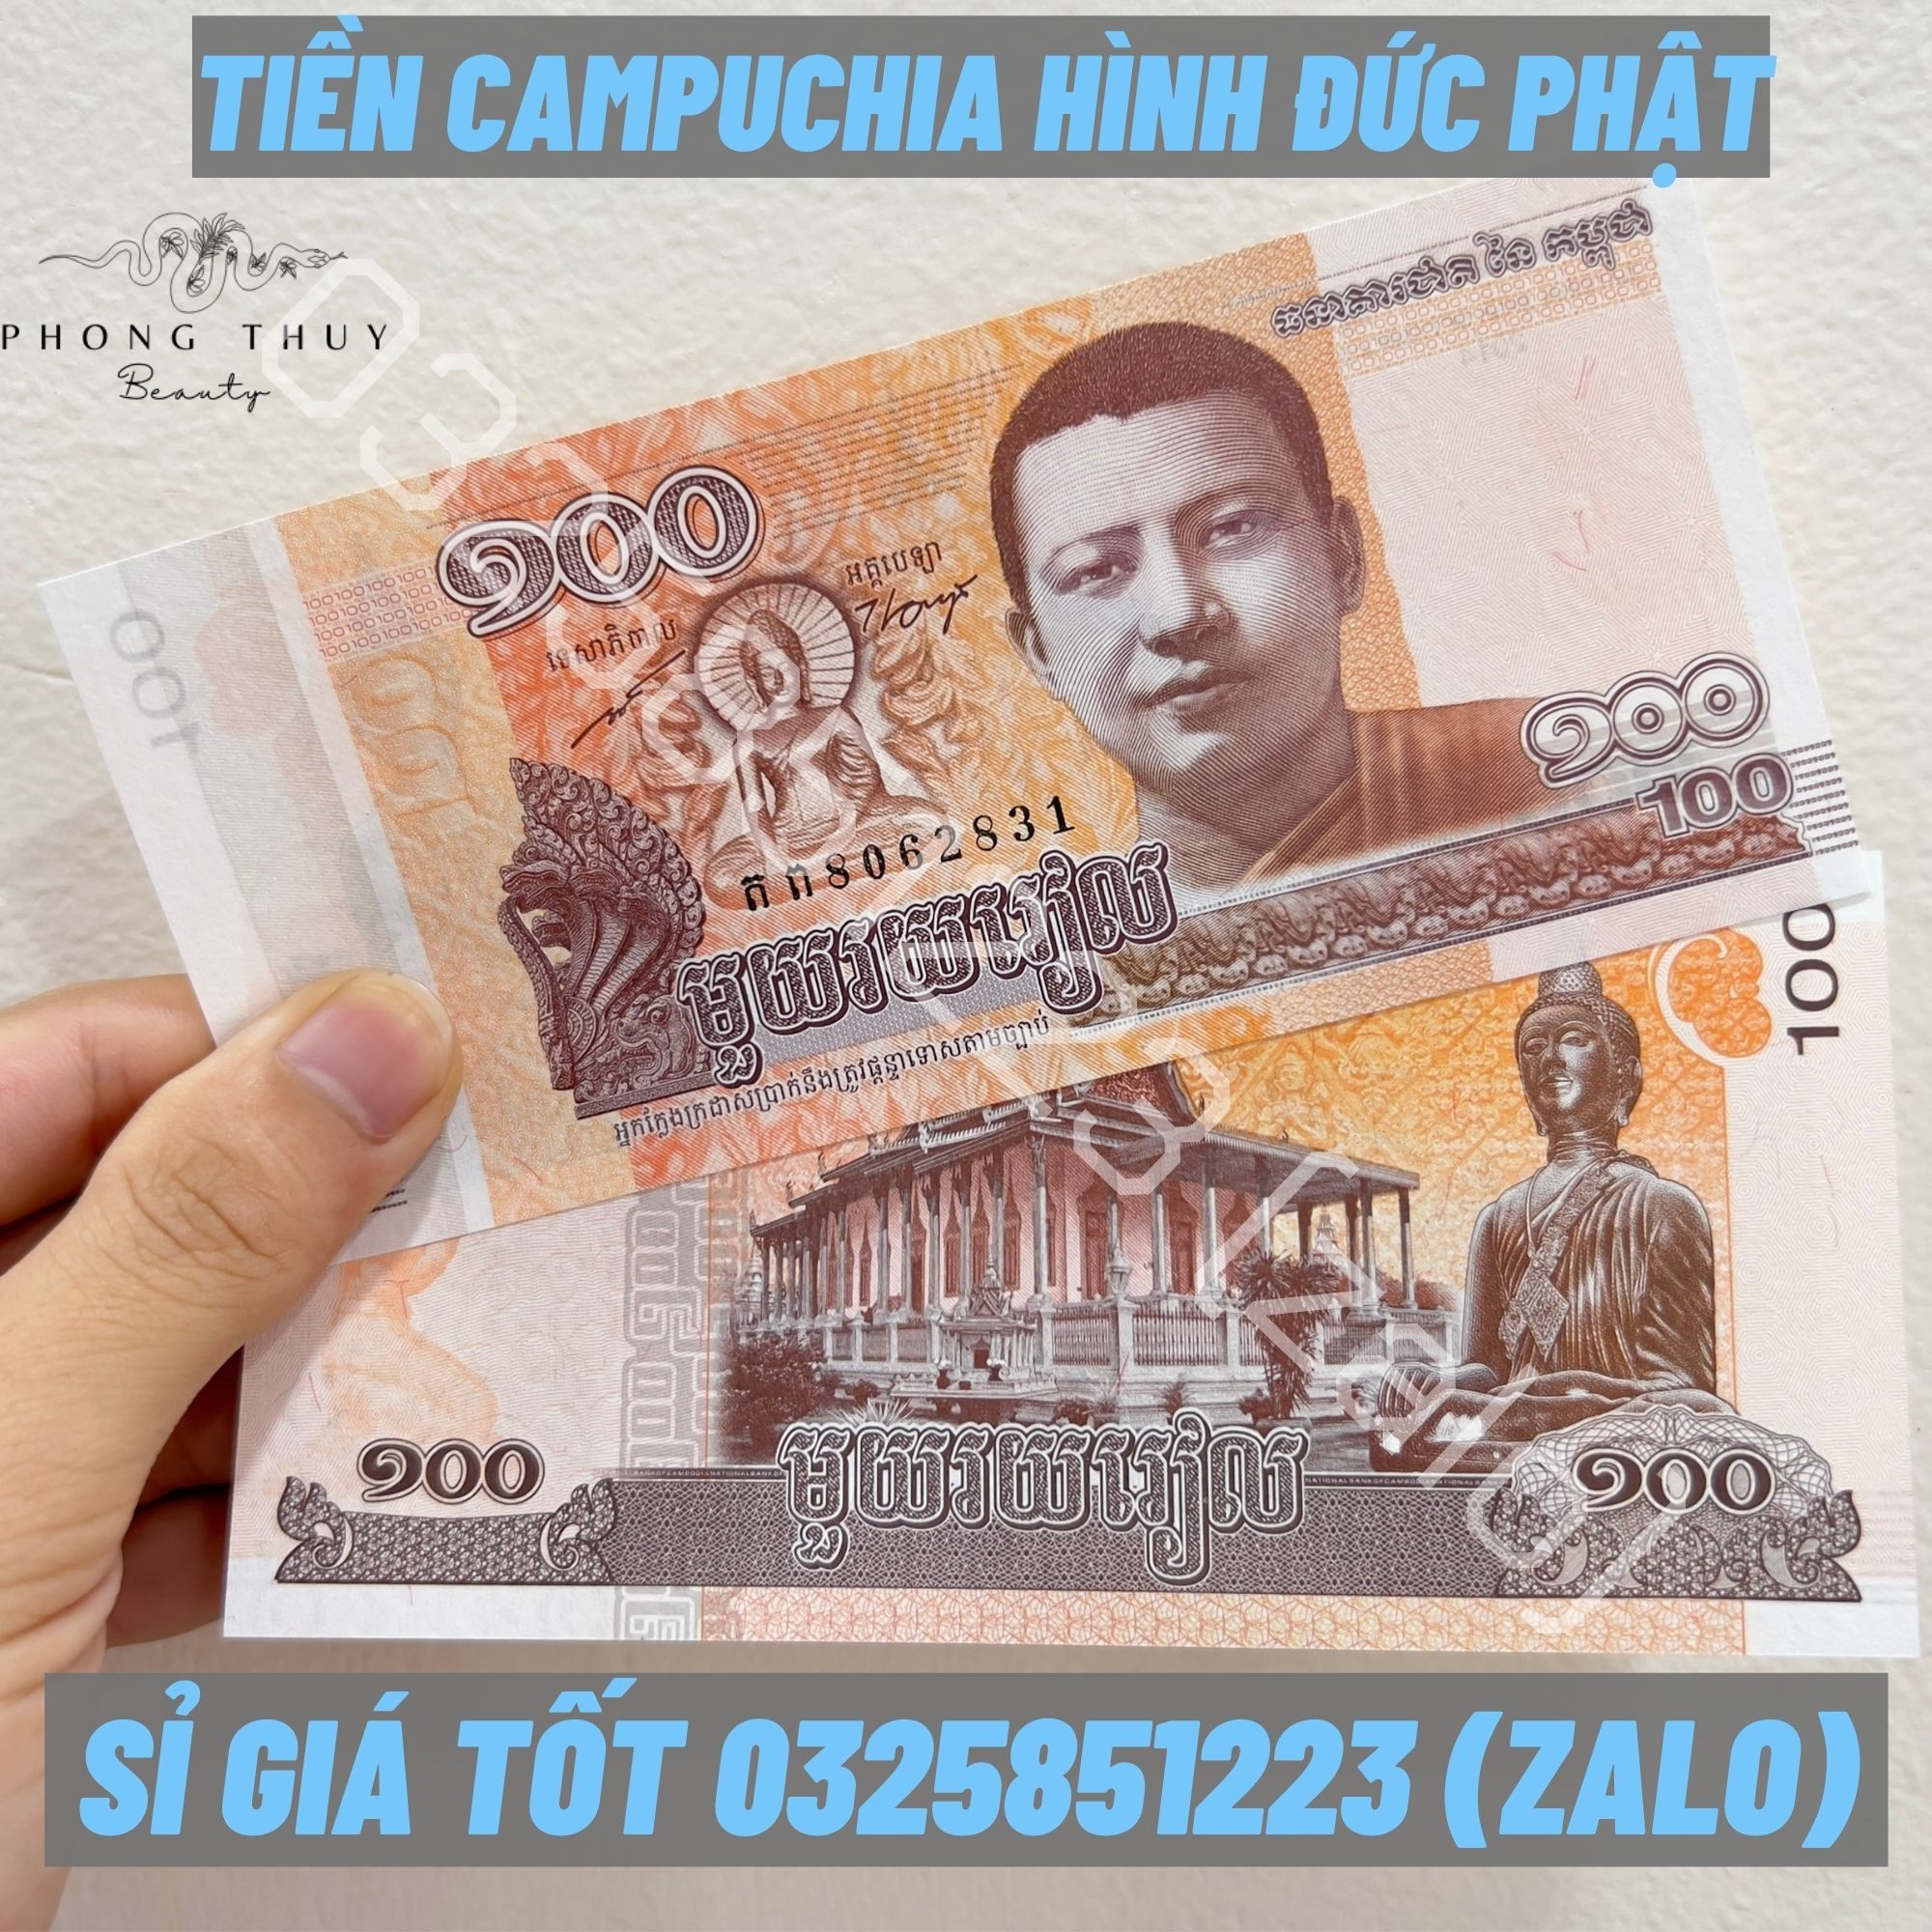 Tiền Campuchia Hình Phật 100 Riel Lì Xì Tết  100 tờ 